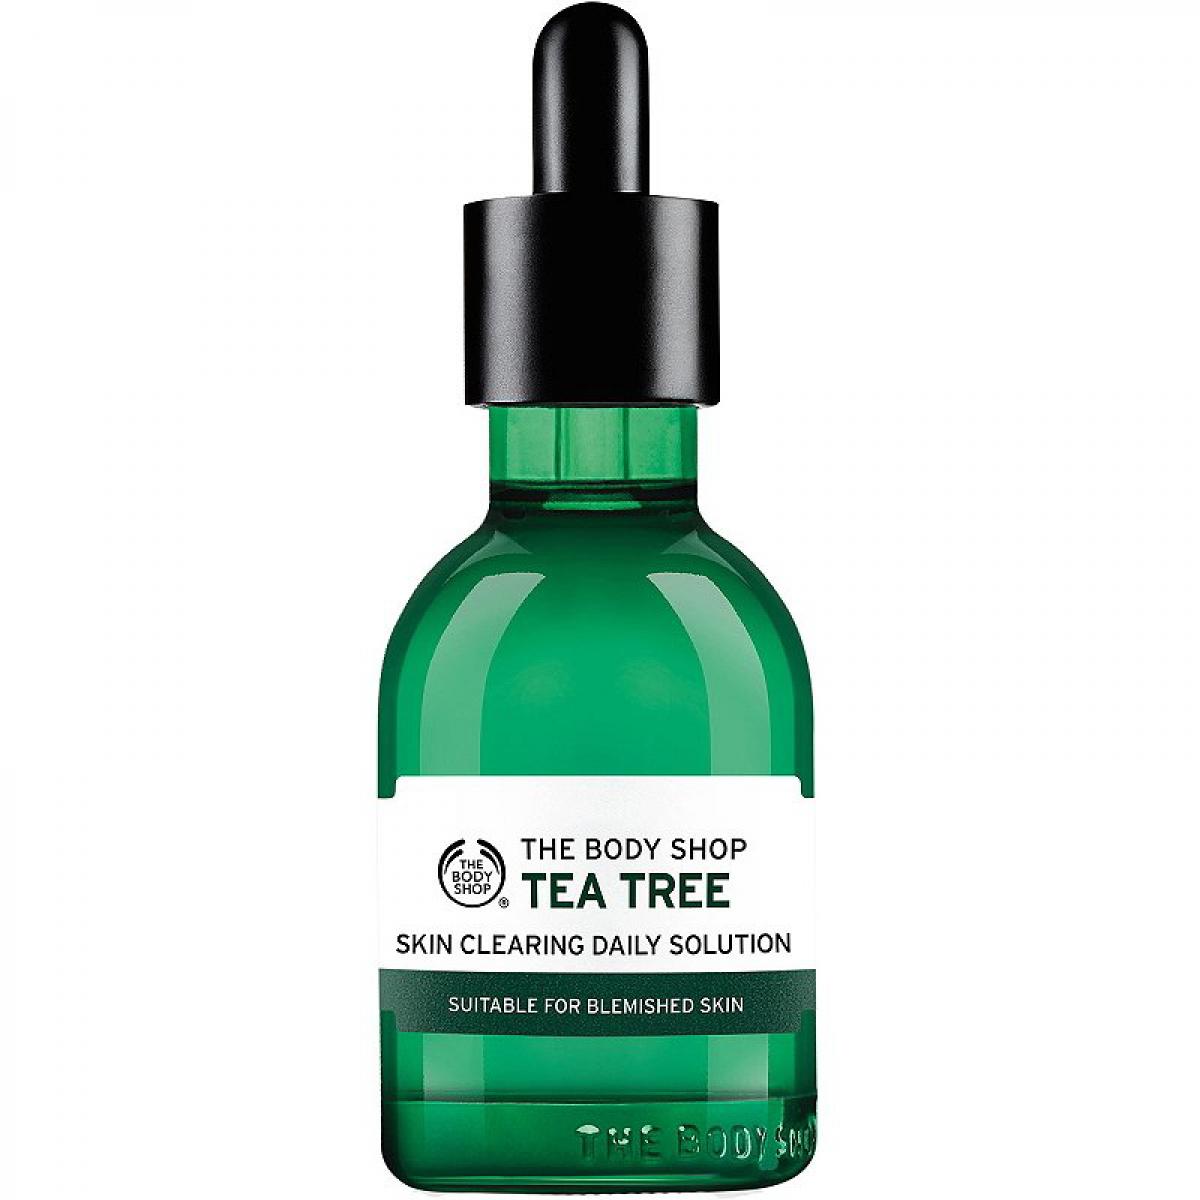 سرم روزانه ضدجوش درخت چای - Tea tree daily solution